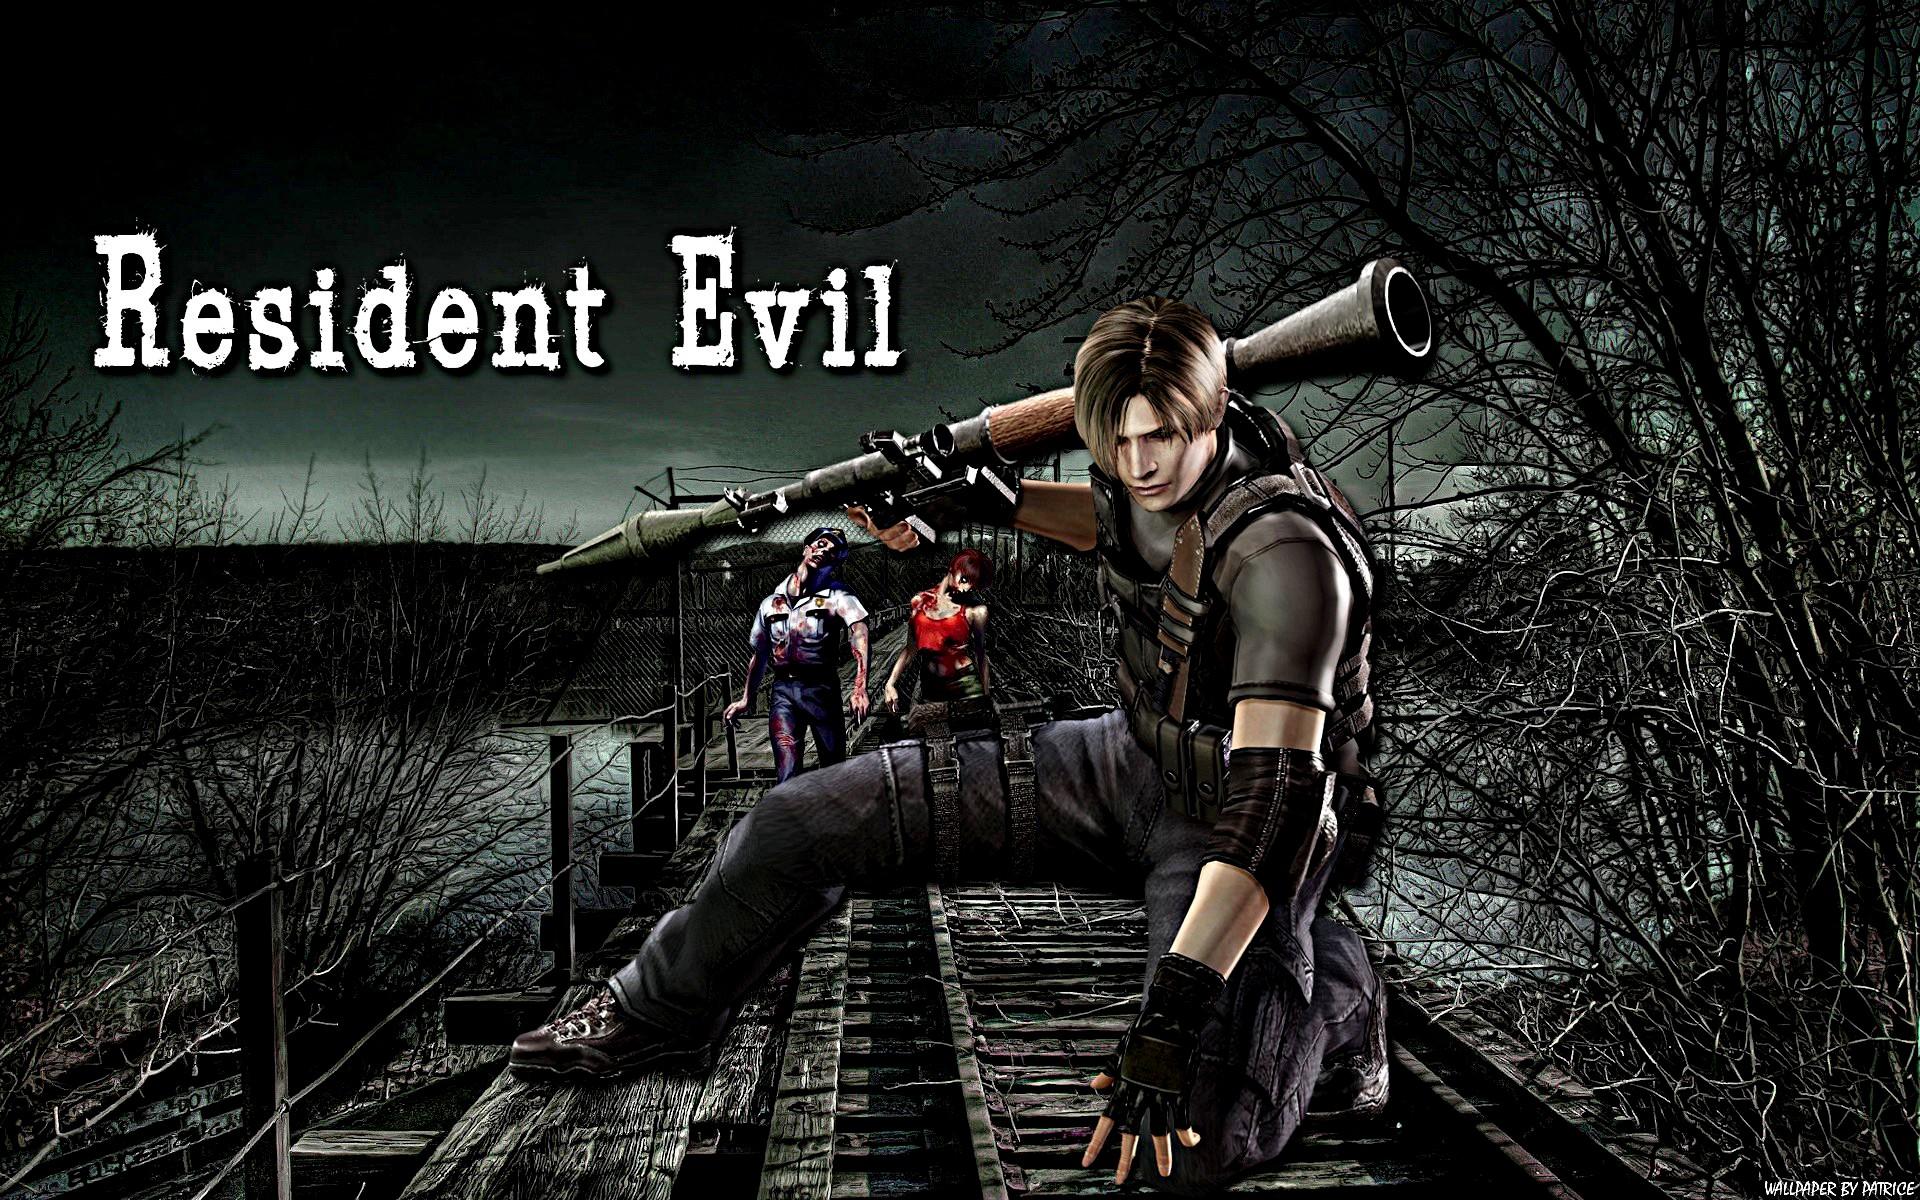 Resident Evil Background. Evil